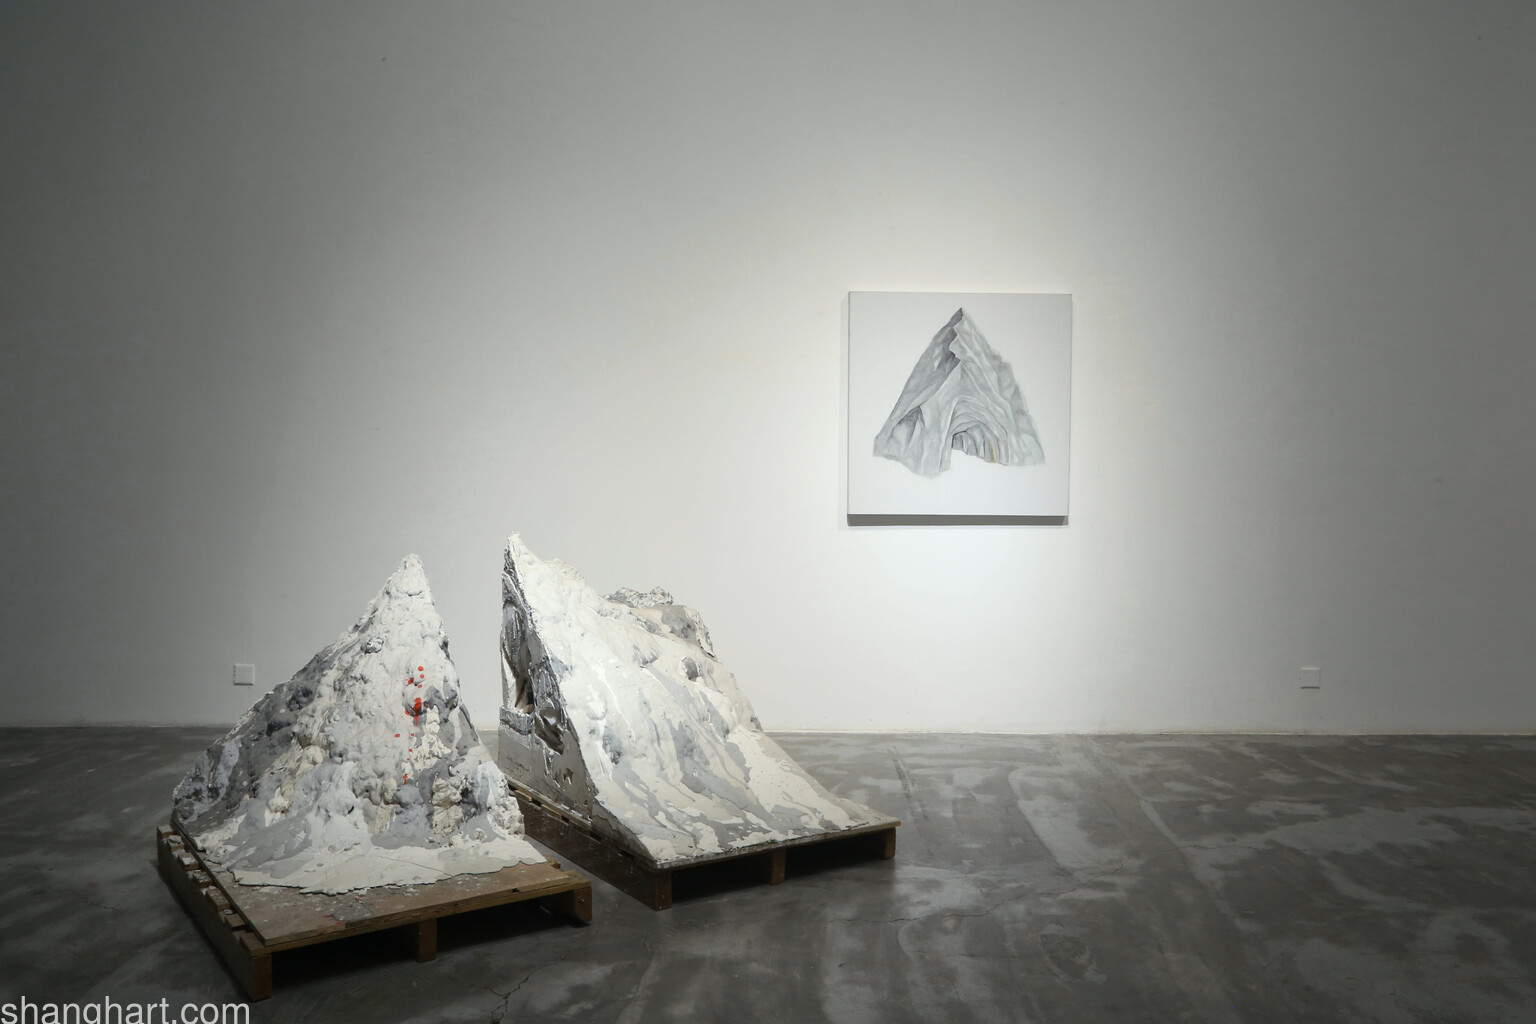 展览现场 | 石青   左：劳动创造山的剩余价值   右：自然向往抽象